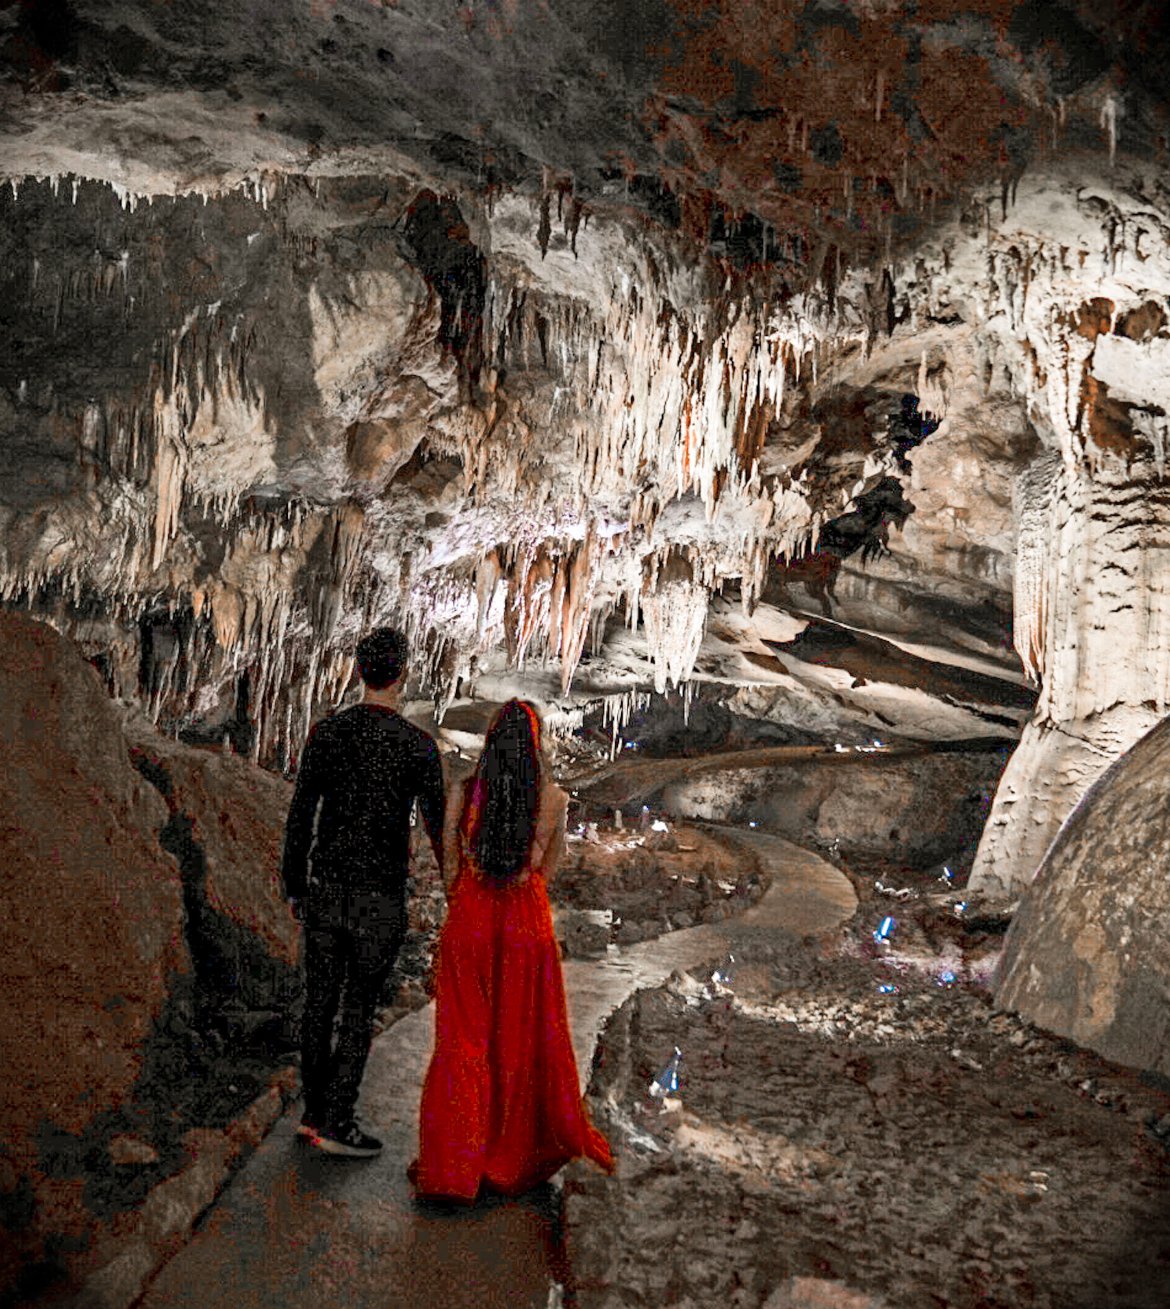 Prometheus Caves, places to visit in Georgia